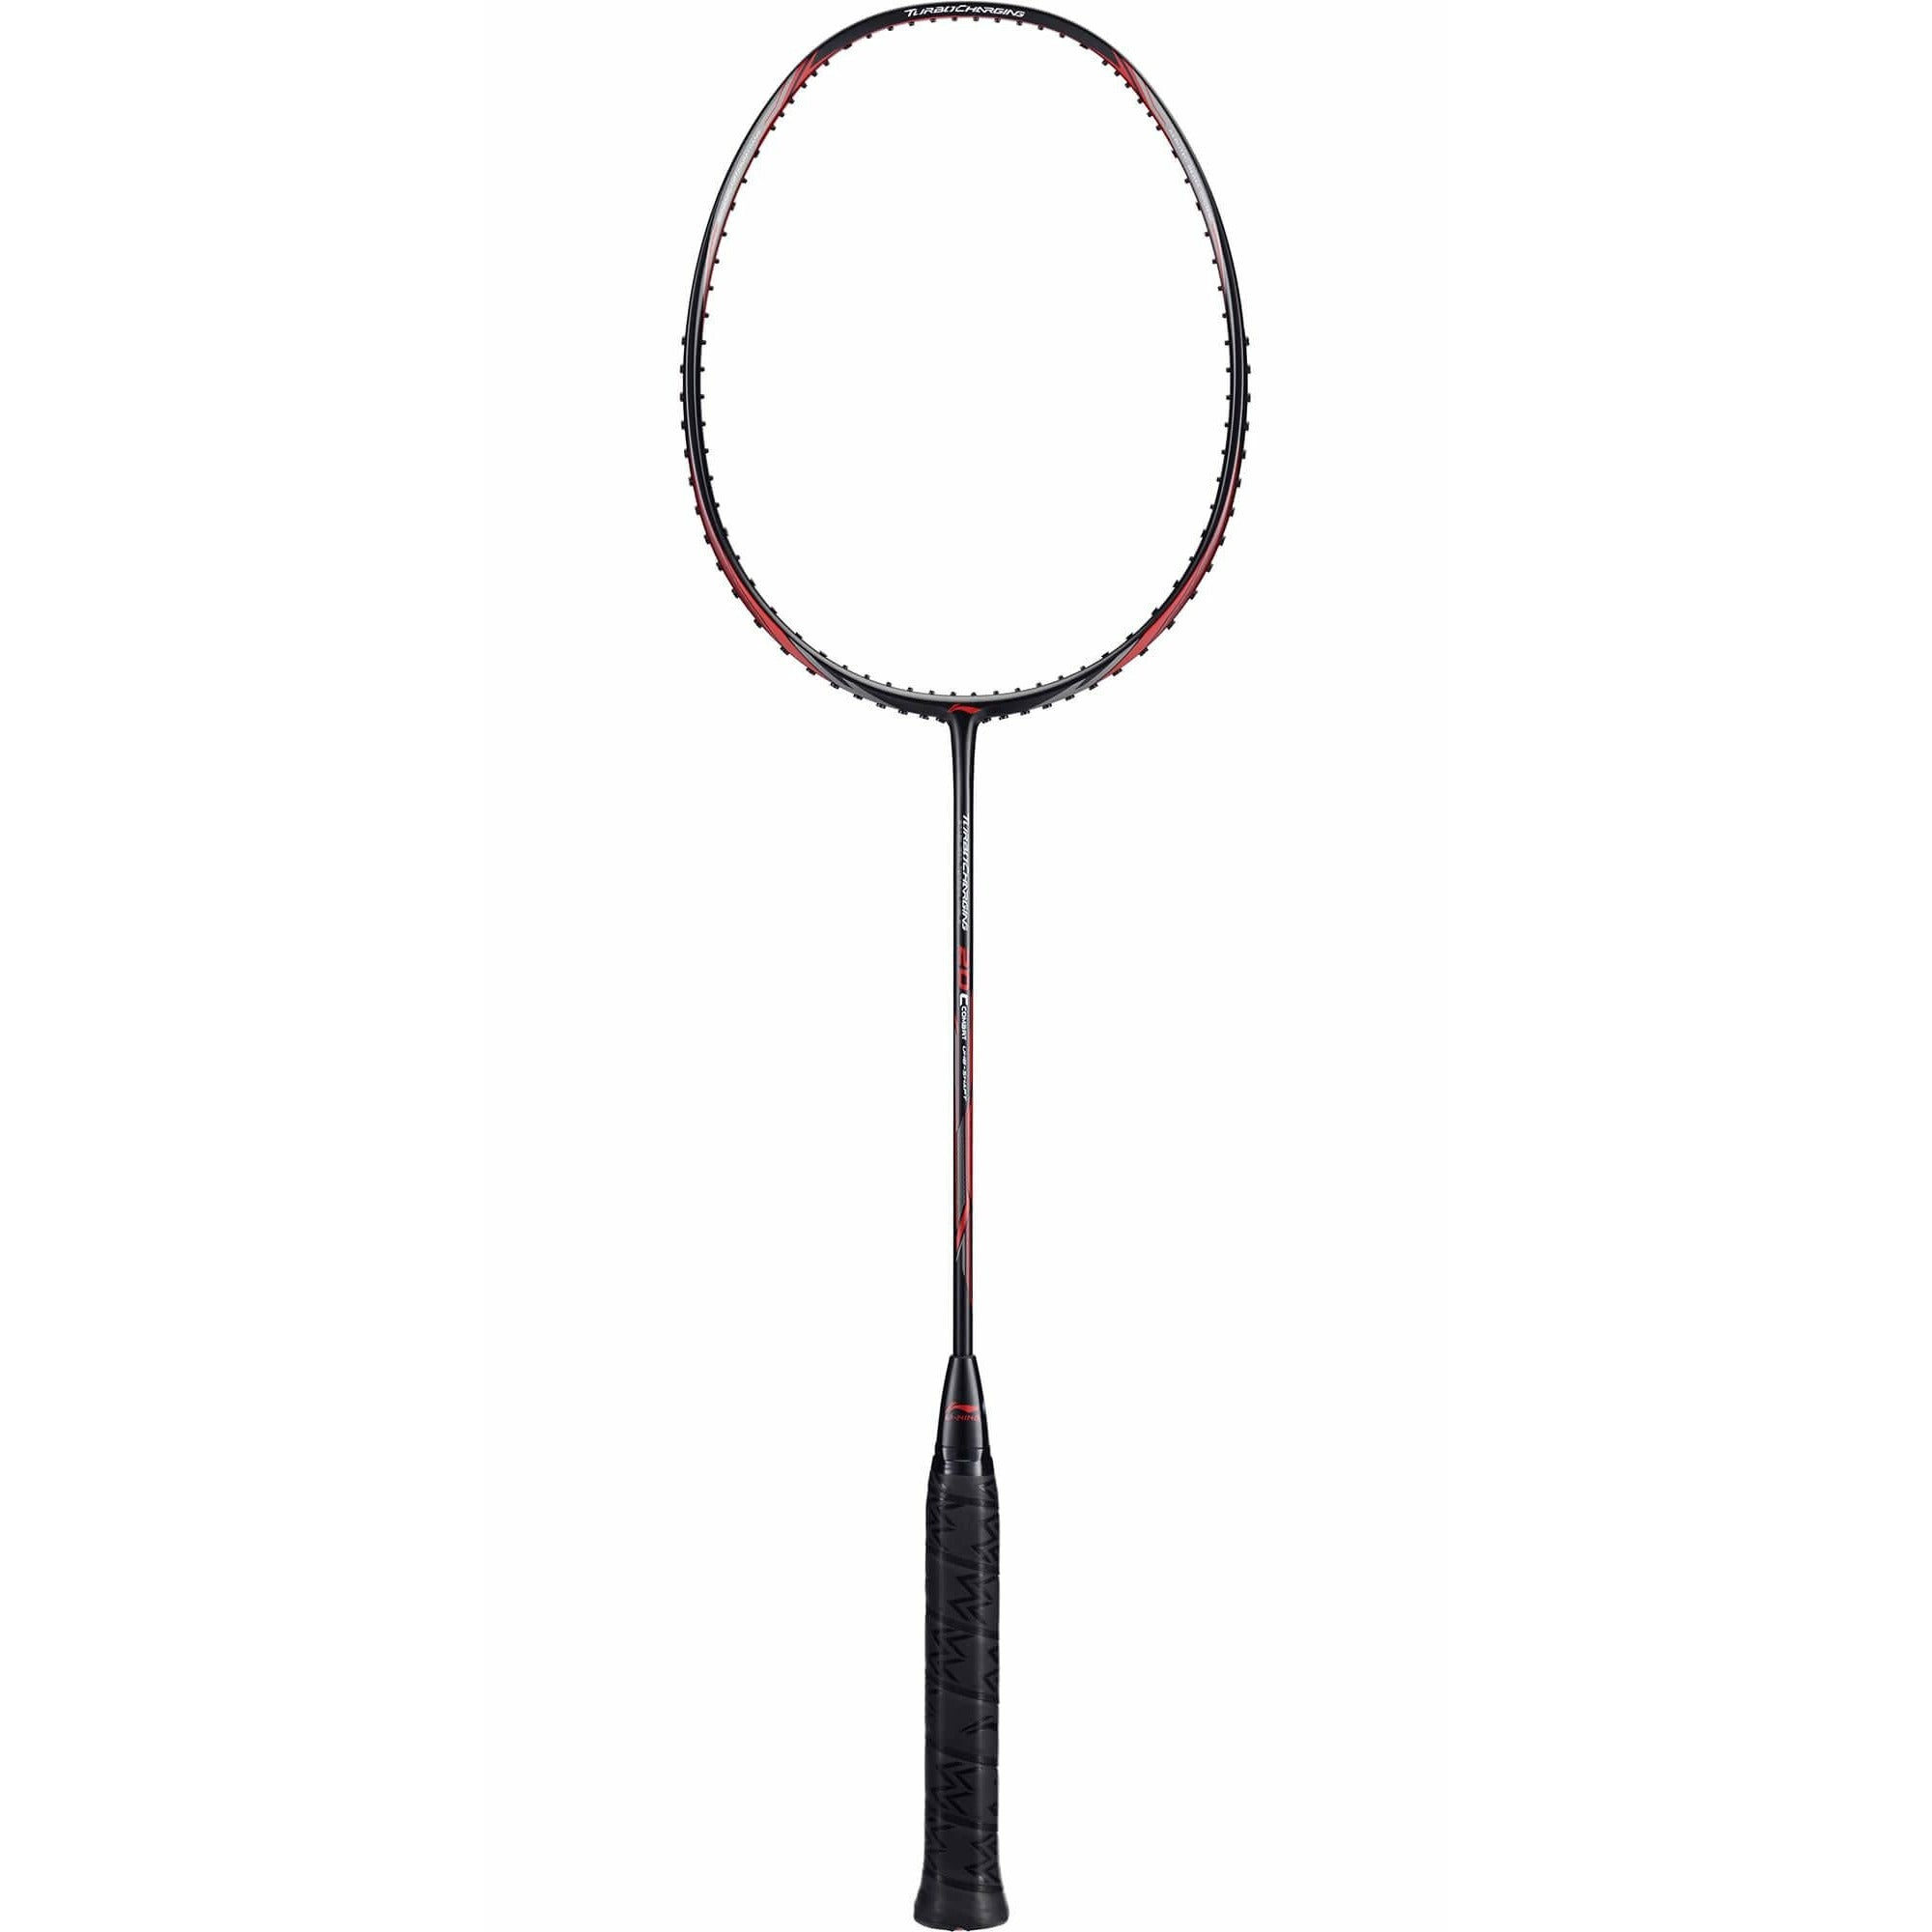 Li-ning turbocharging 20 combat badminton racket